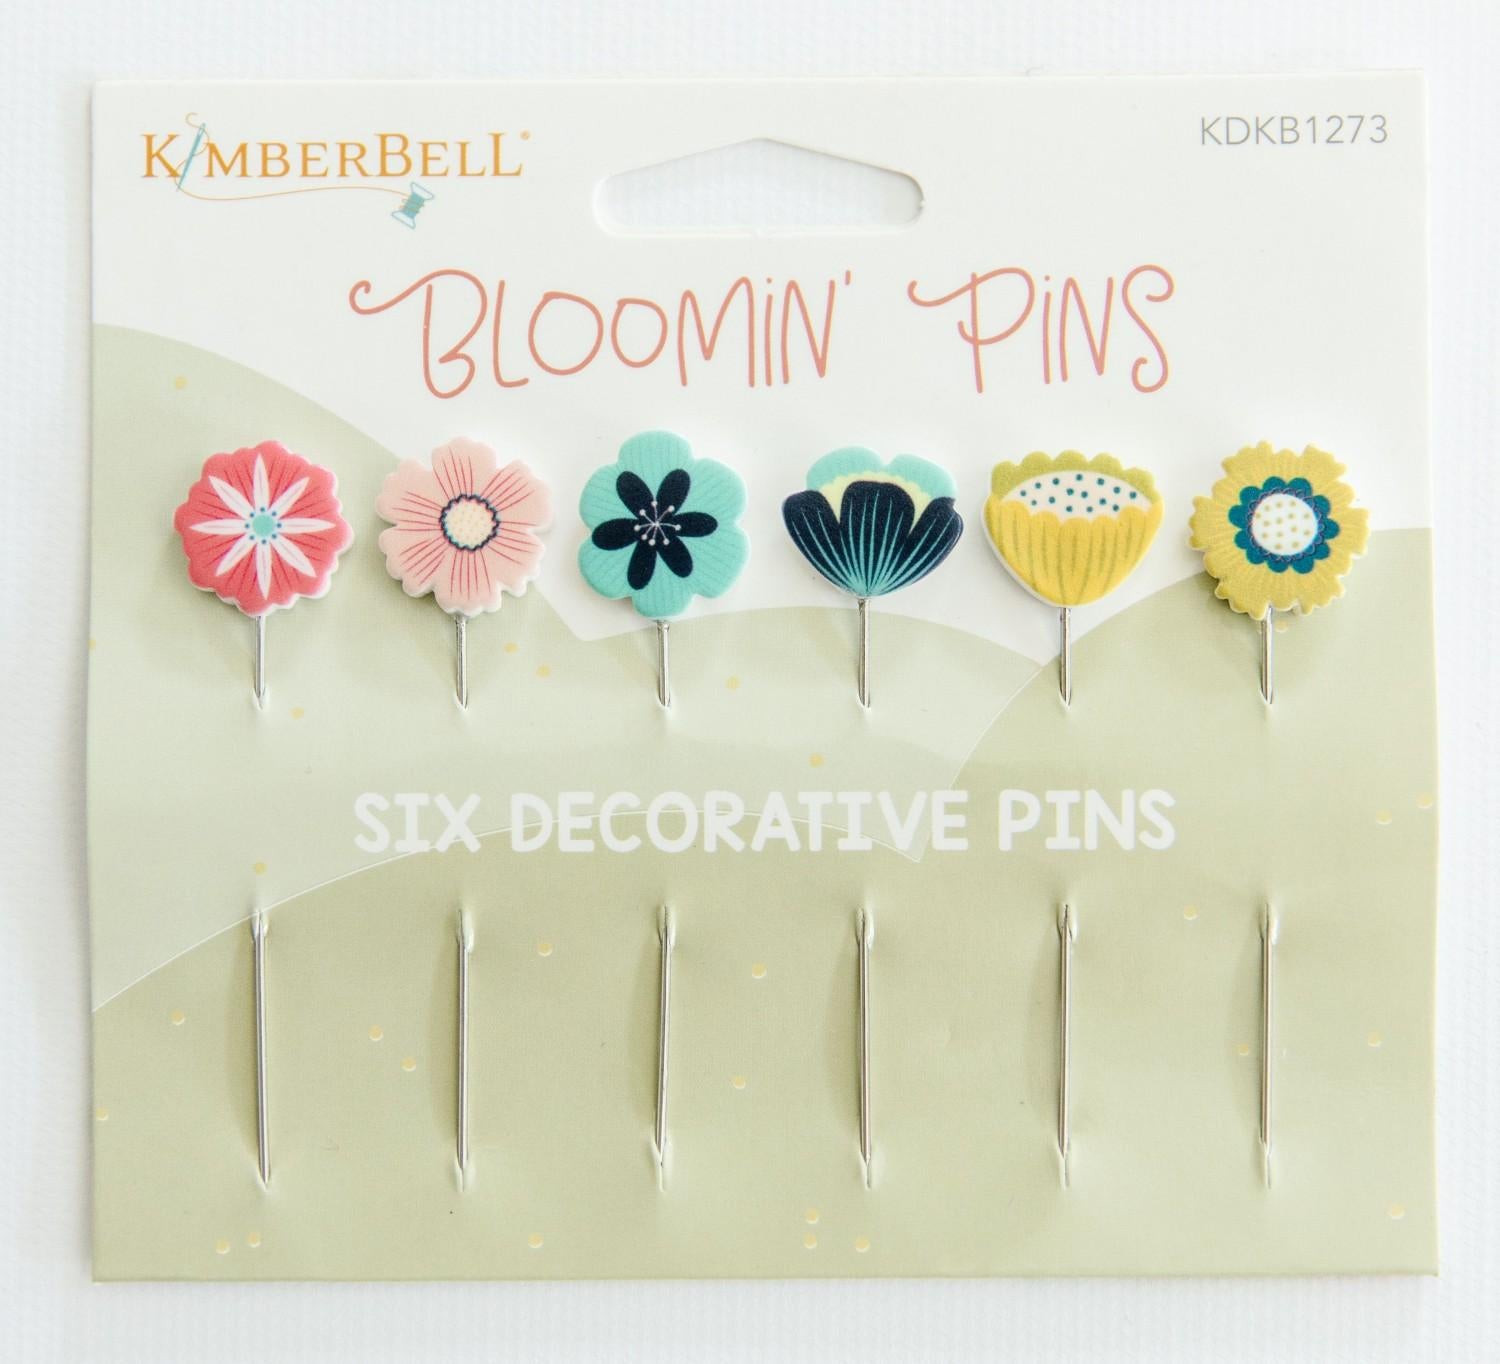 Bloomin’ Pins - KDKB1273